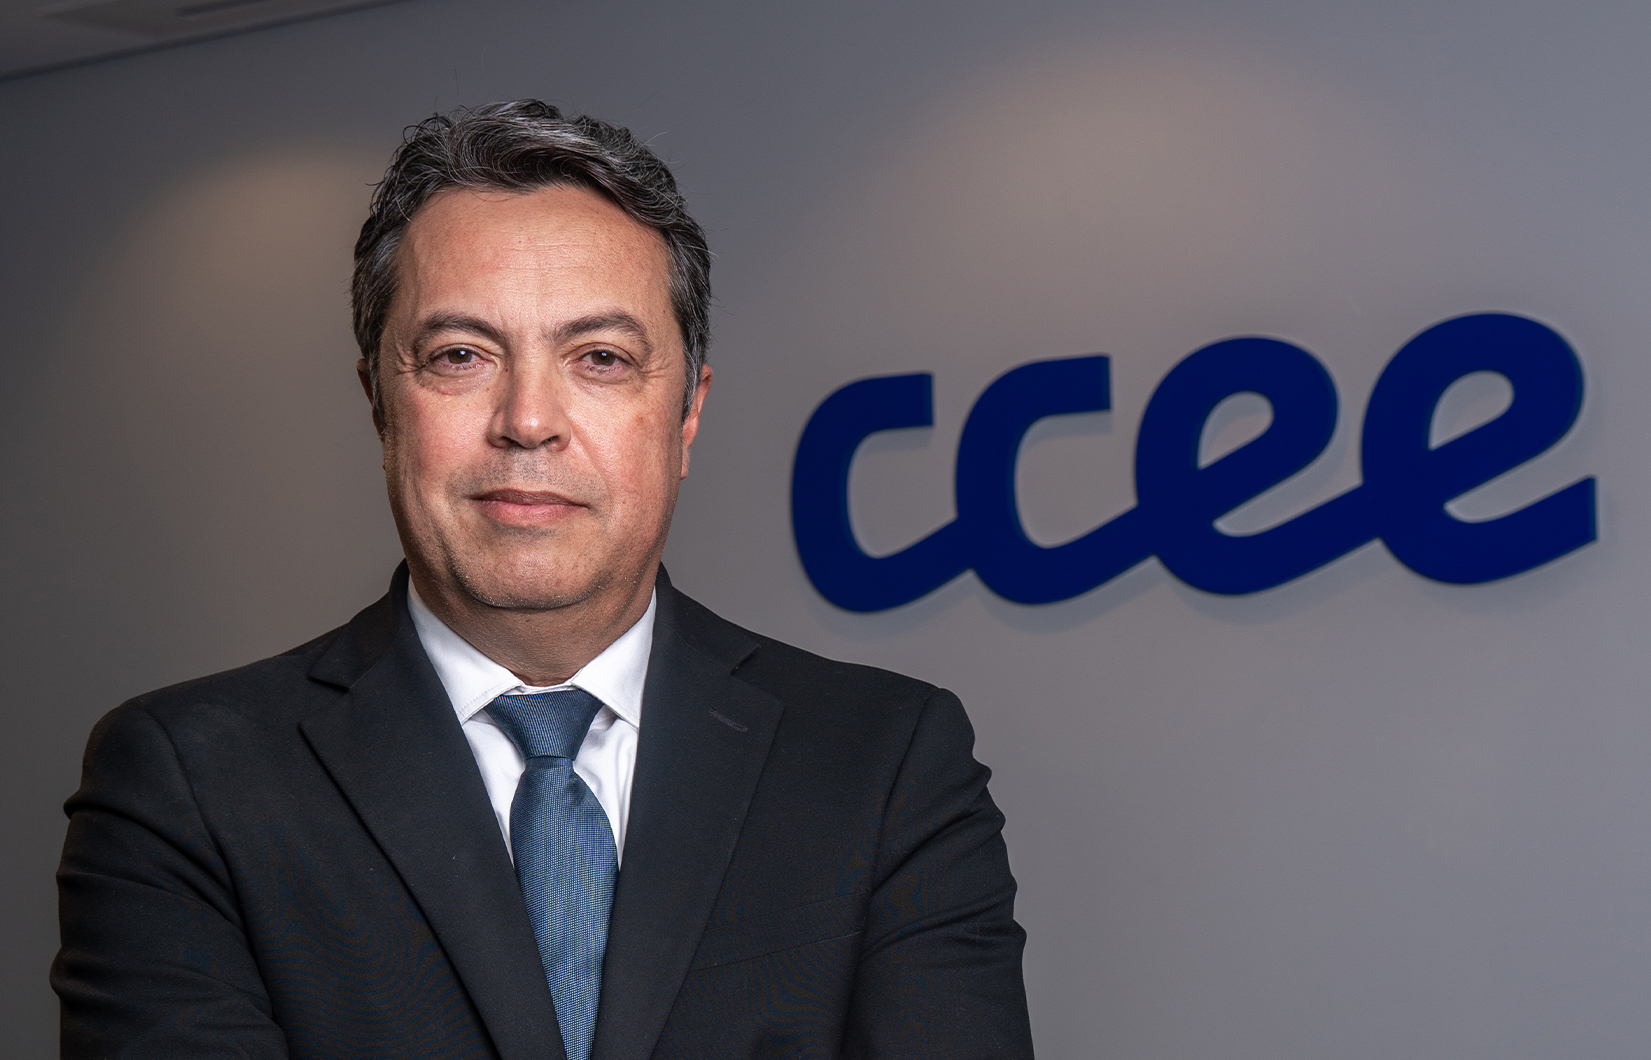 Imagem do presidente do Conselho de Administração da CCEE, Alexandre Ramos. Ele é um homem branco, que veste um terno preto, com camisa branca e gravata azul.